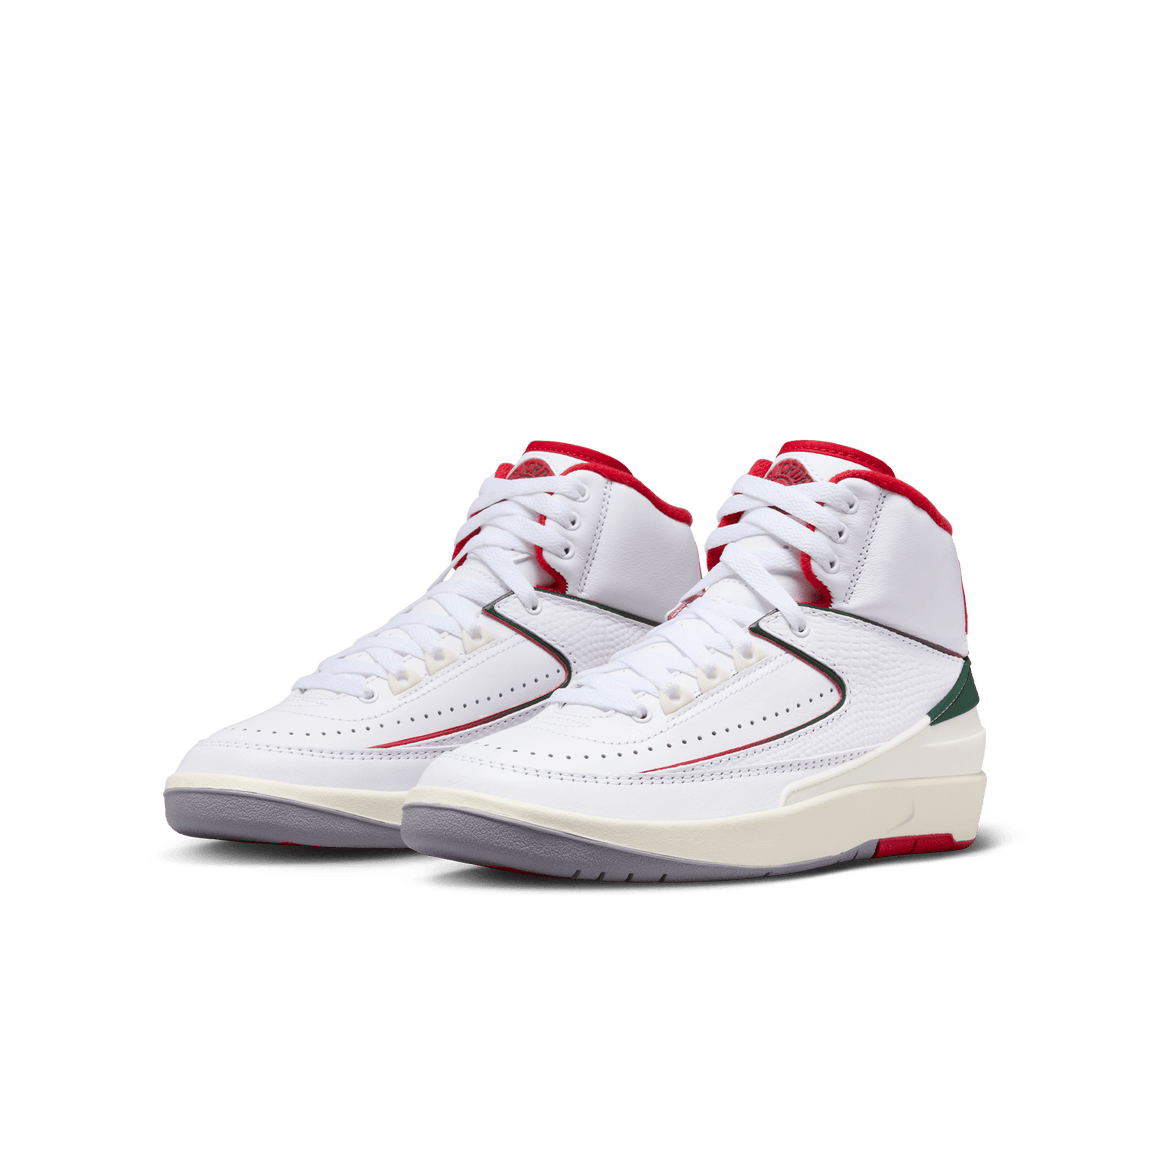 Air Jordan 2 Retro GS (White/Fire Red-Fir-Sail) - Air Jordan 2 Retro GS (White/Fire Red-Fir-Sail) - 